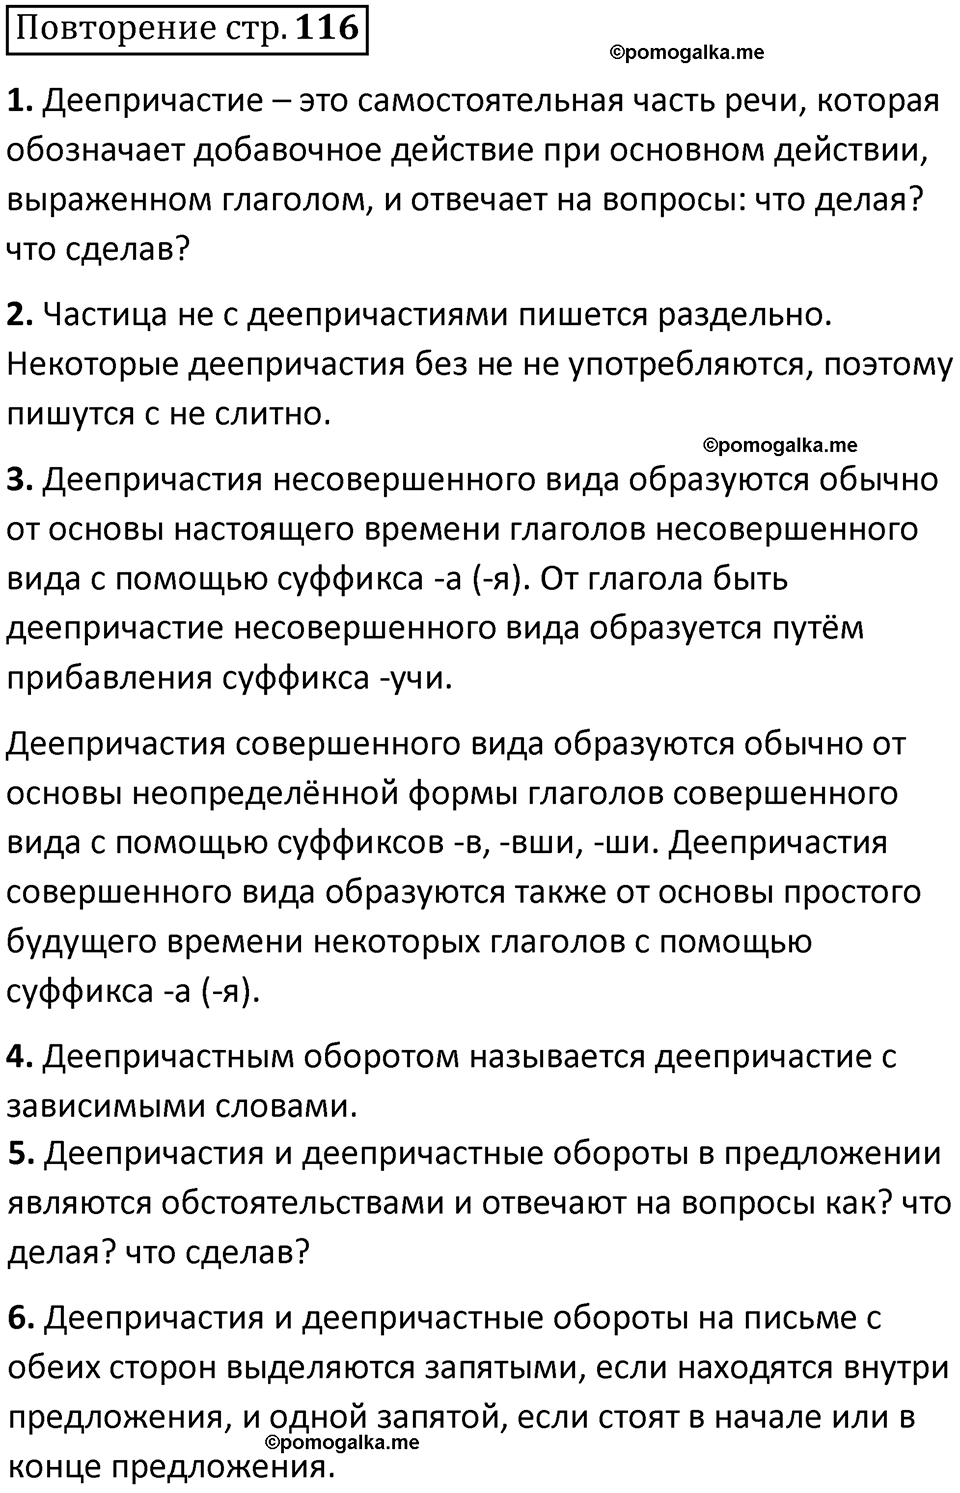 страница 116 повторение русский язык 7 класс Баранов, Ладыженская 2021-2022 год